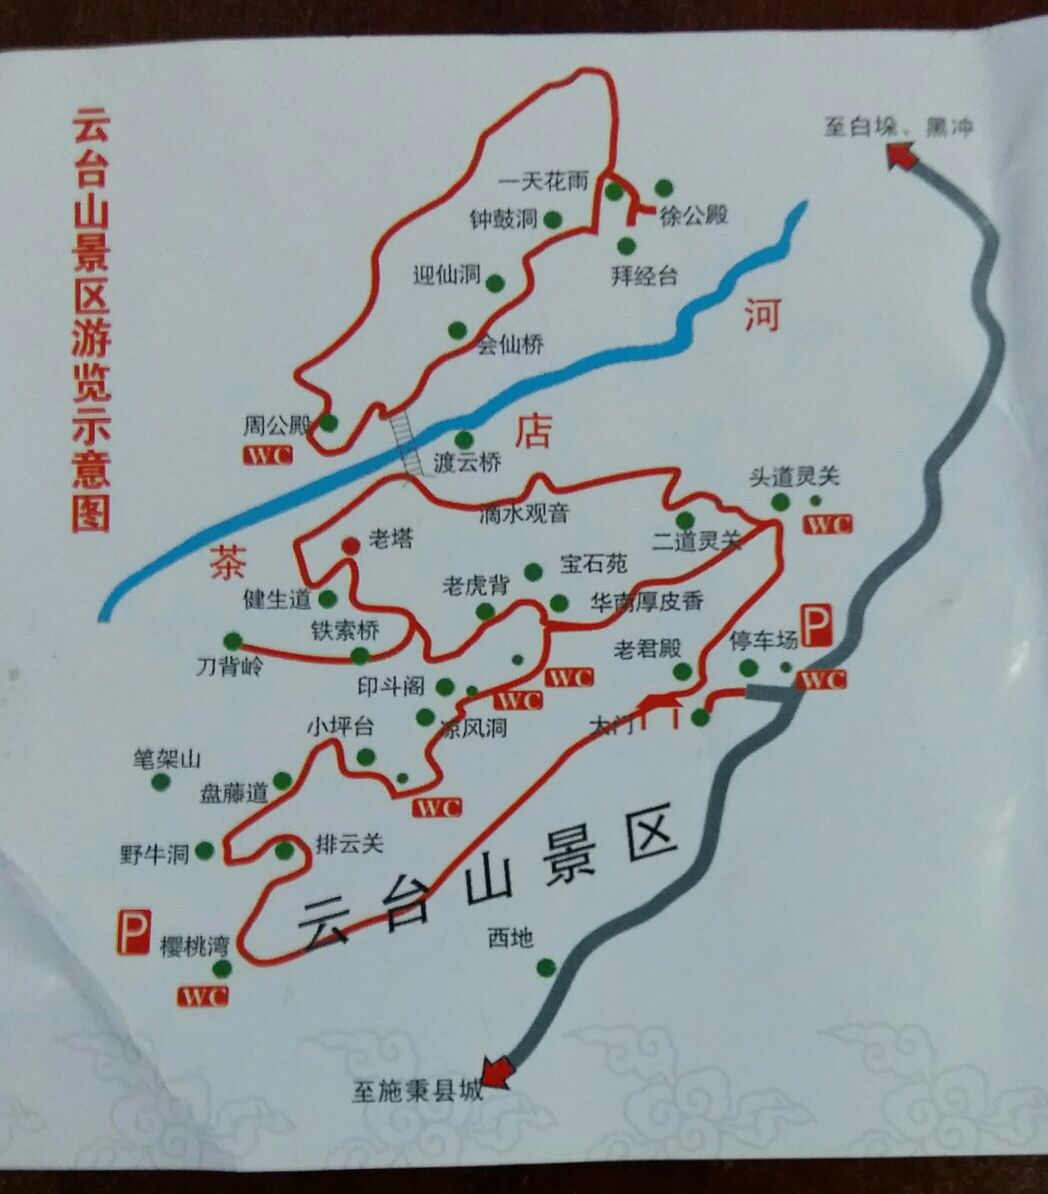 云台山主要景点路线图图片